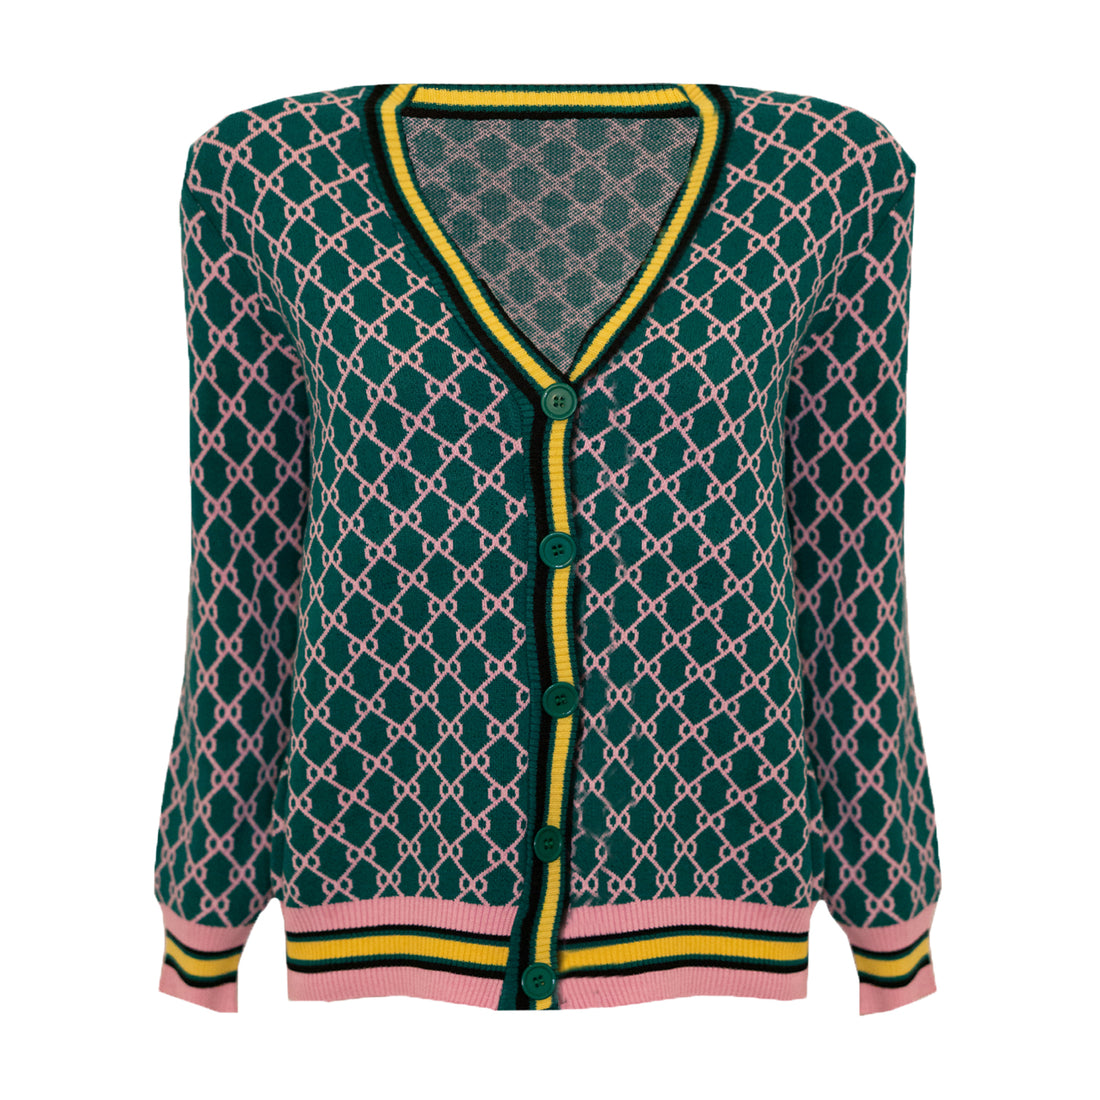 Groen vest met GG print. Gucci inspired cardigan green. Groen oversized vest met print. Het vest is afgewerkt met roze en gele details. Het vest is one-size en geschikt voor de maten S, M en L. Materiaal van het vest is: 100% polyester.